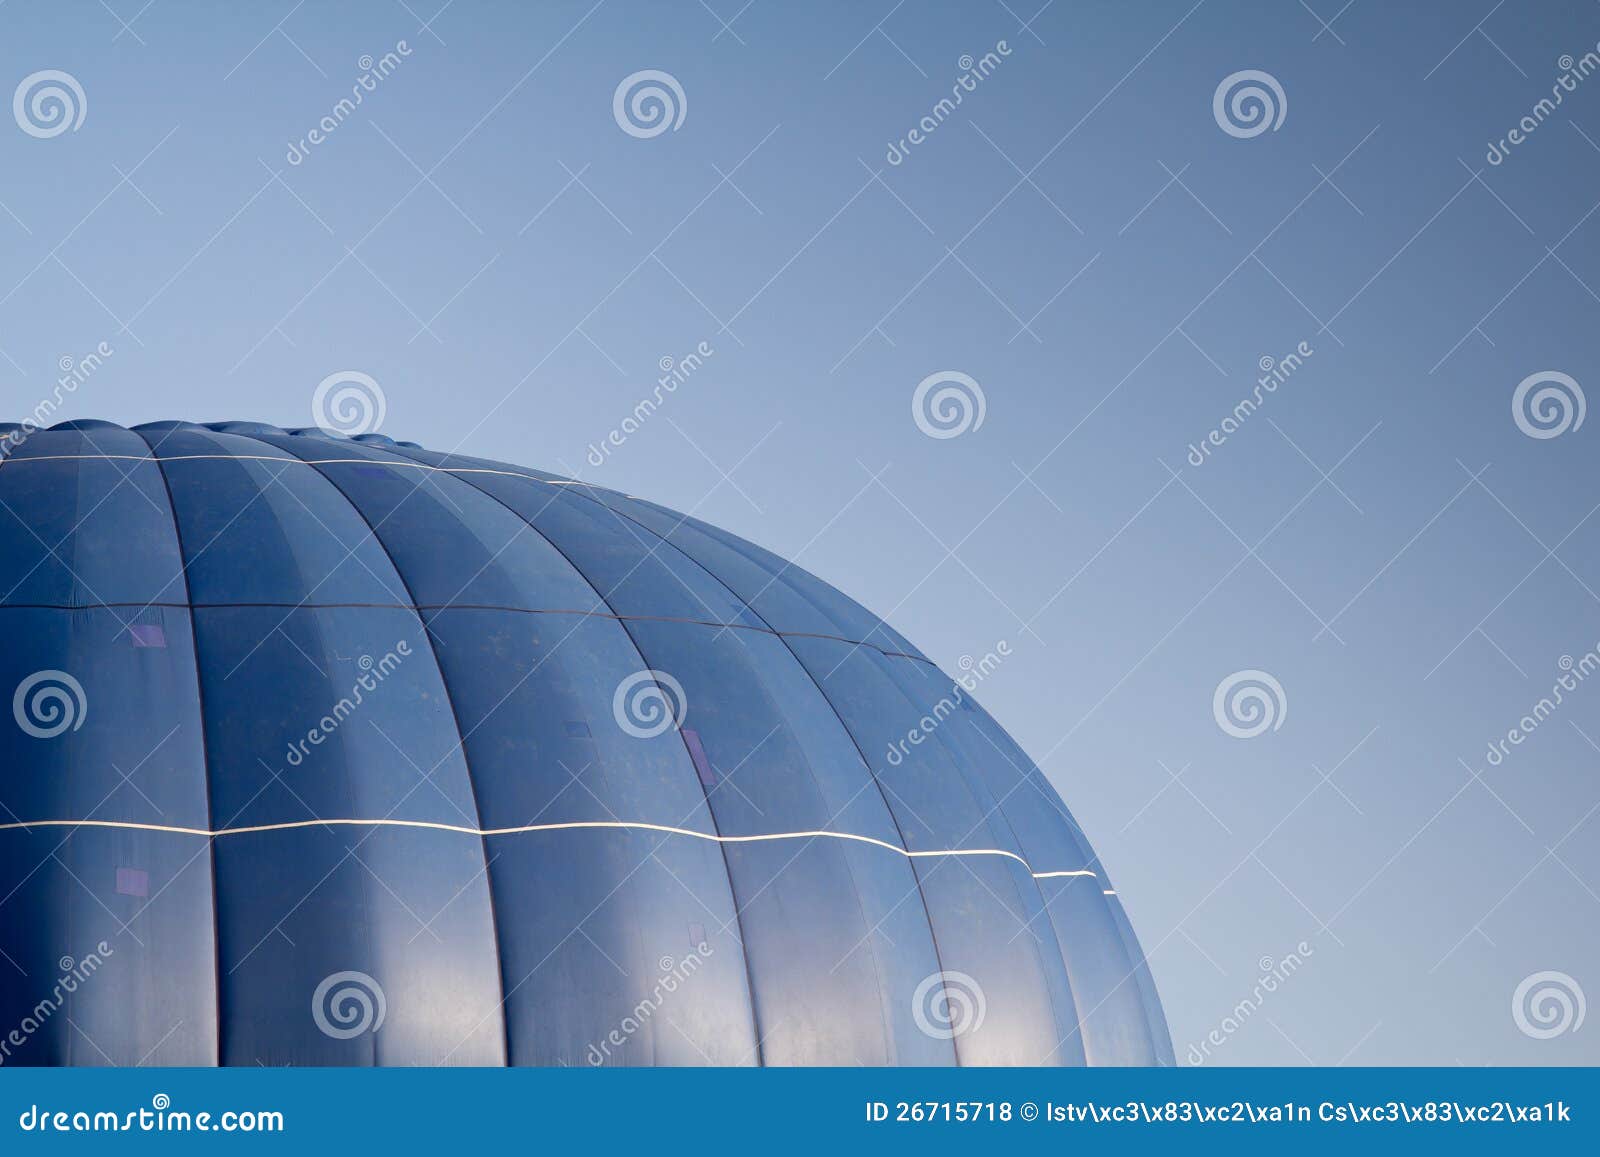 Горячий воздушный шар над голубым небом